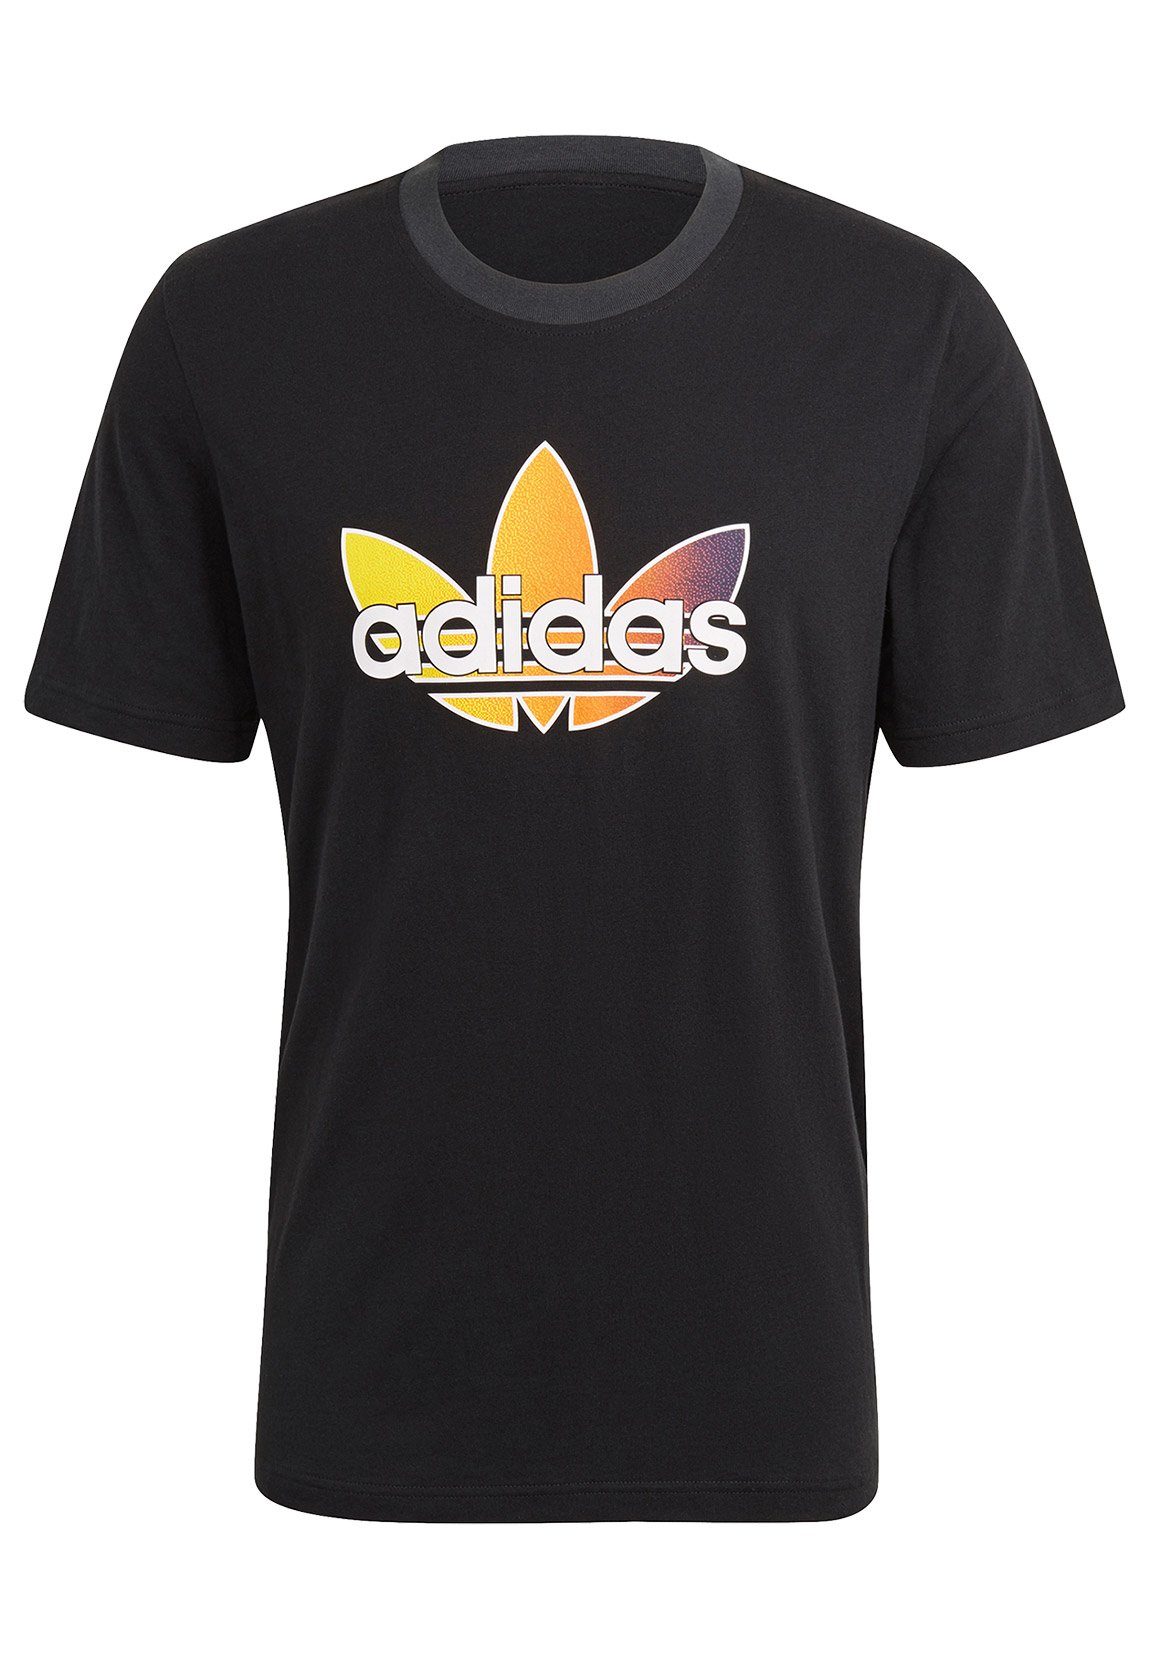 adidas Originals T-Shirt »Adidas Originals T-Shirt Herren SPRT GRAPHIC T  GN2441 Schwarz« online kaufen | OTTO